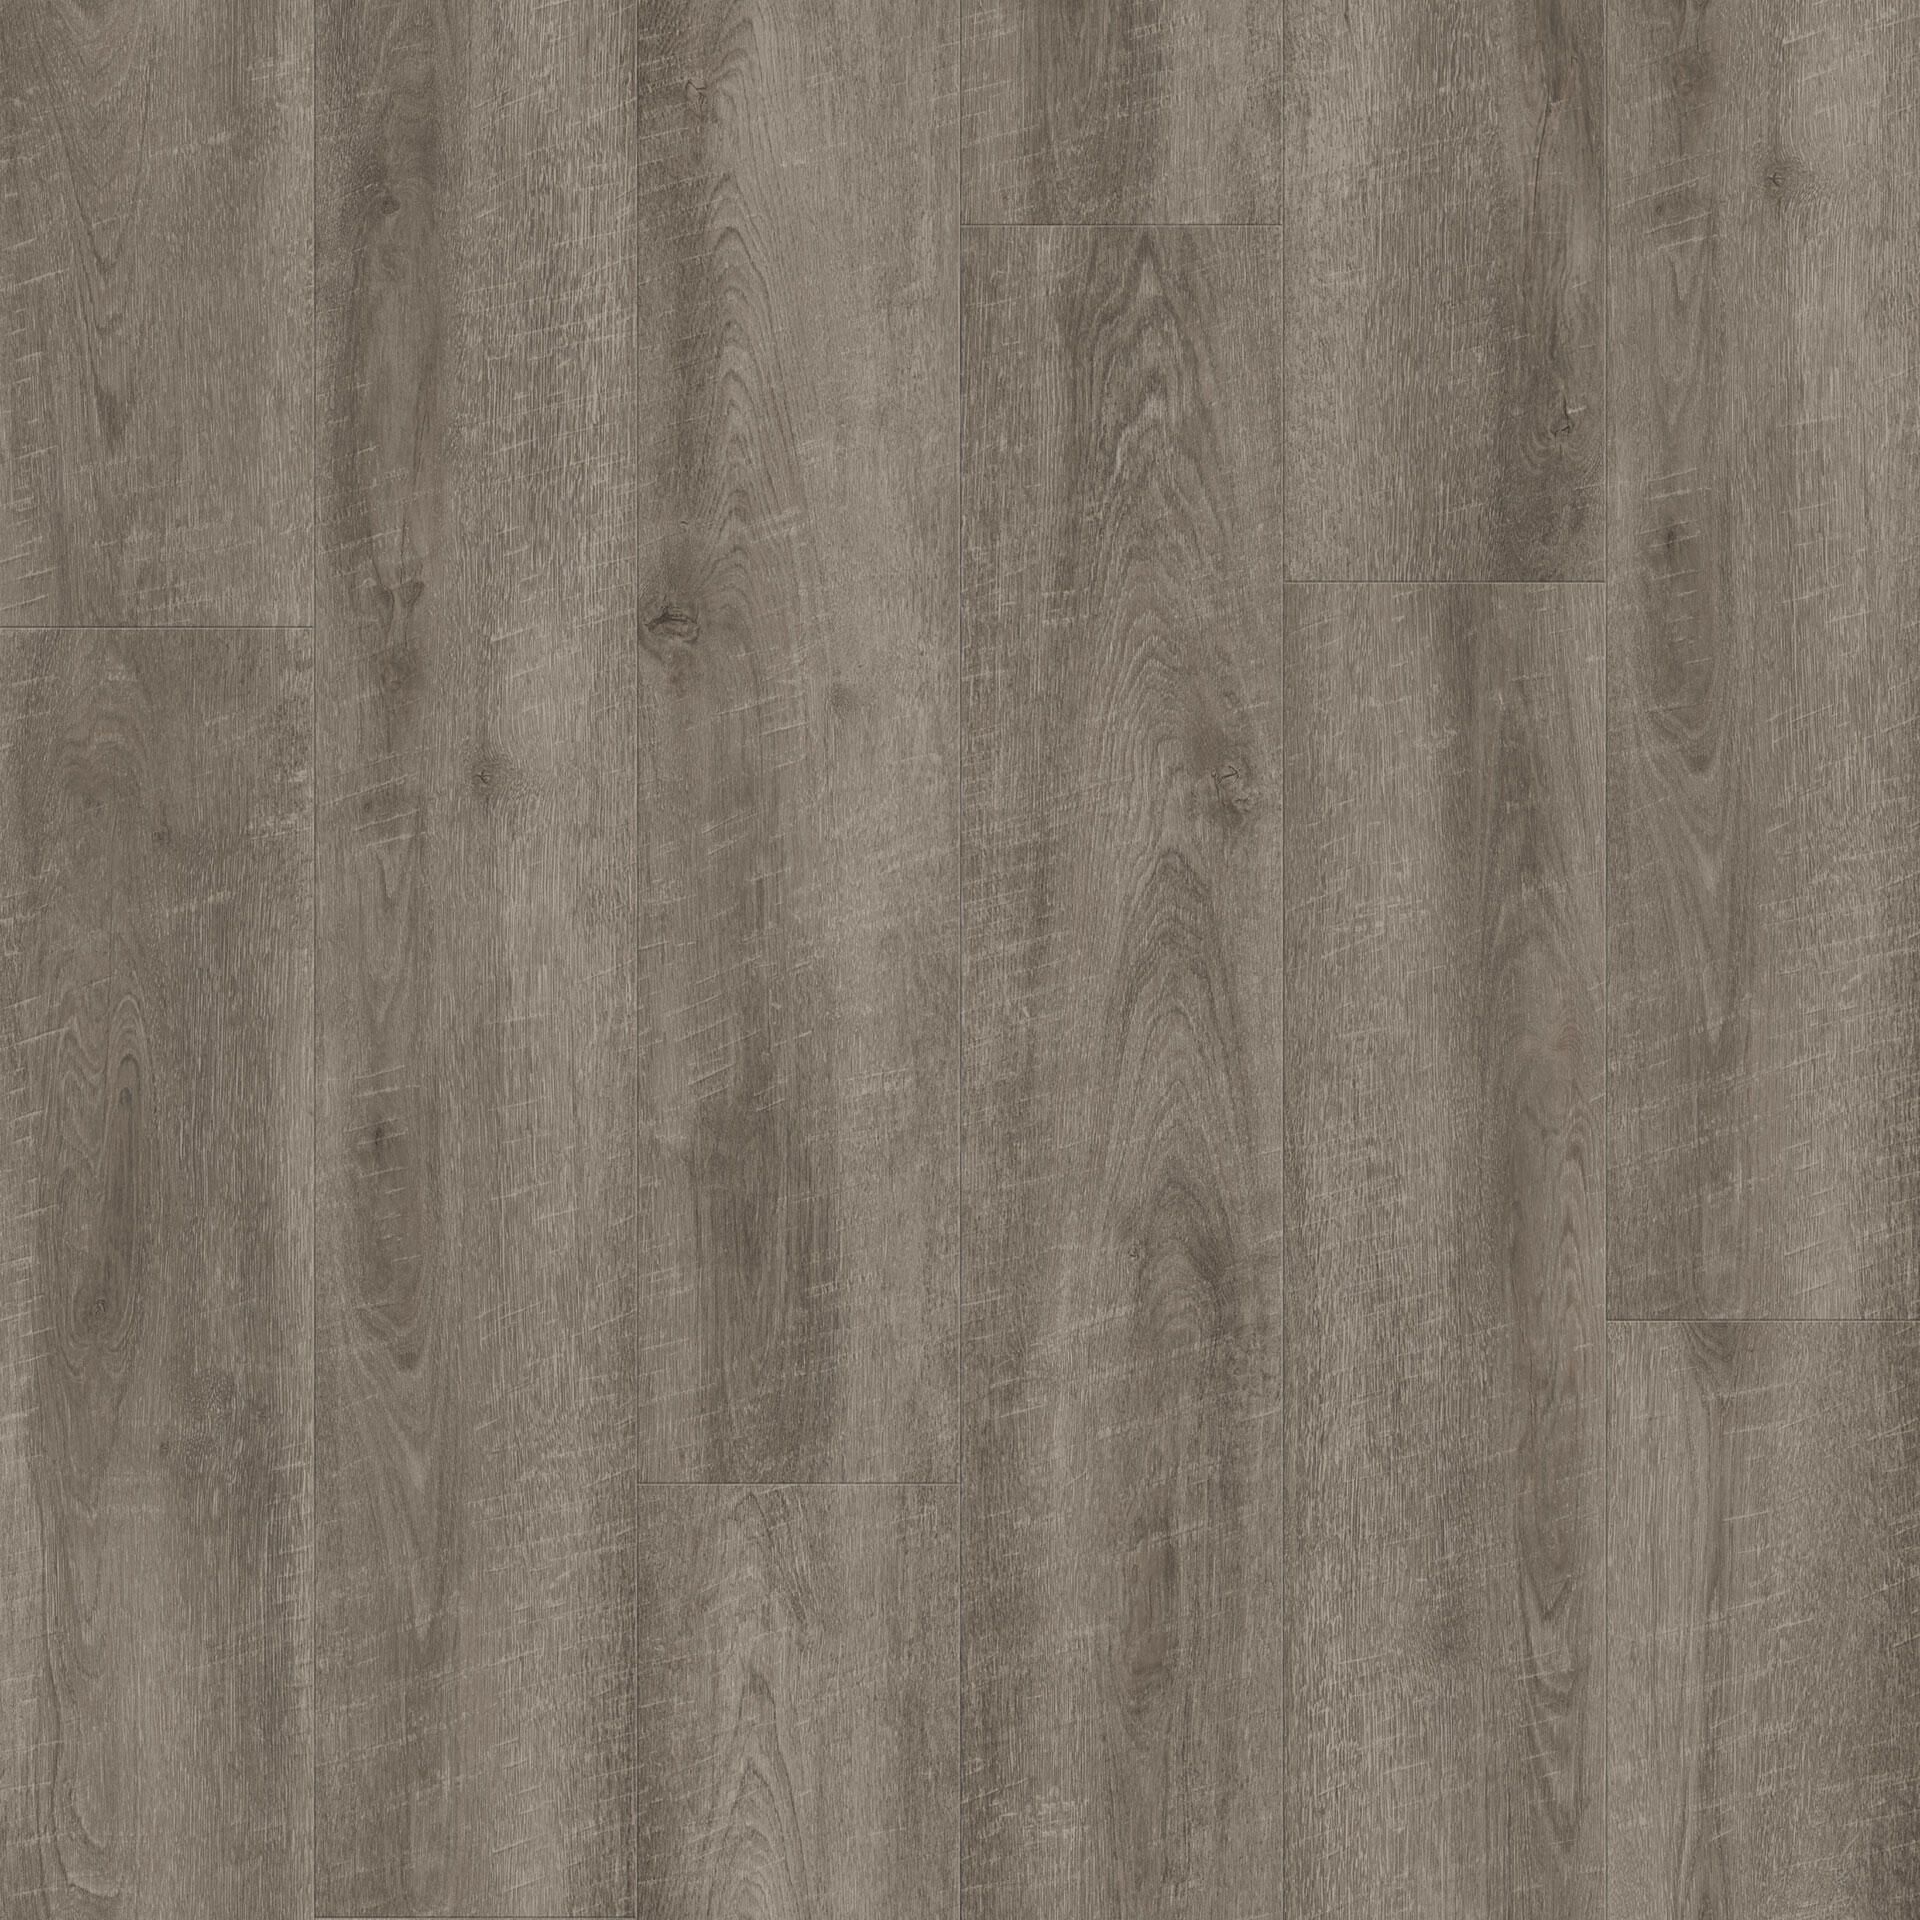 Tarkett iD Click Ultimate 55 Vinylplanke CLASSICS - Antik Oak - Dark Grey grau 260018002